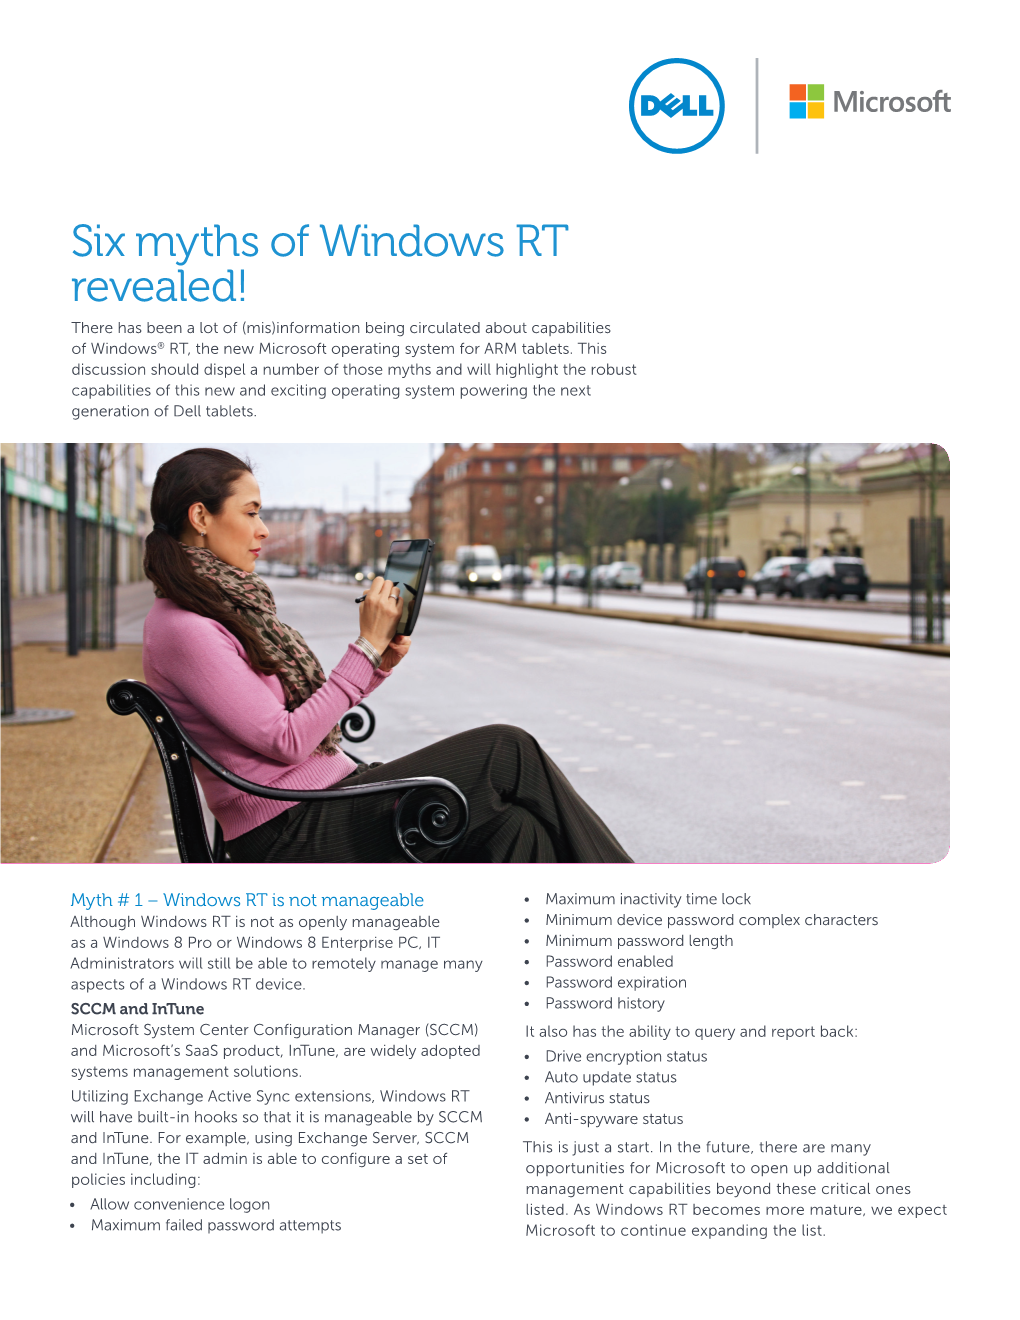 Six Myths of Windows RT Revealed!